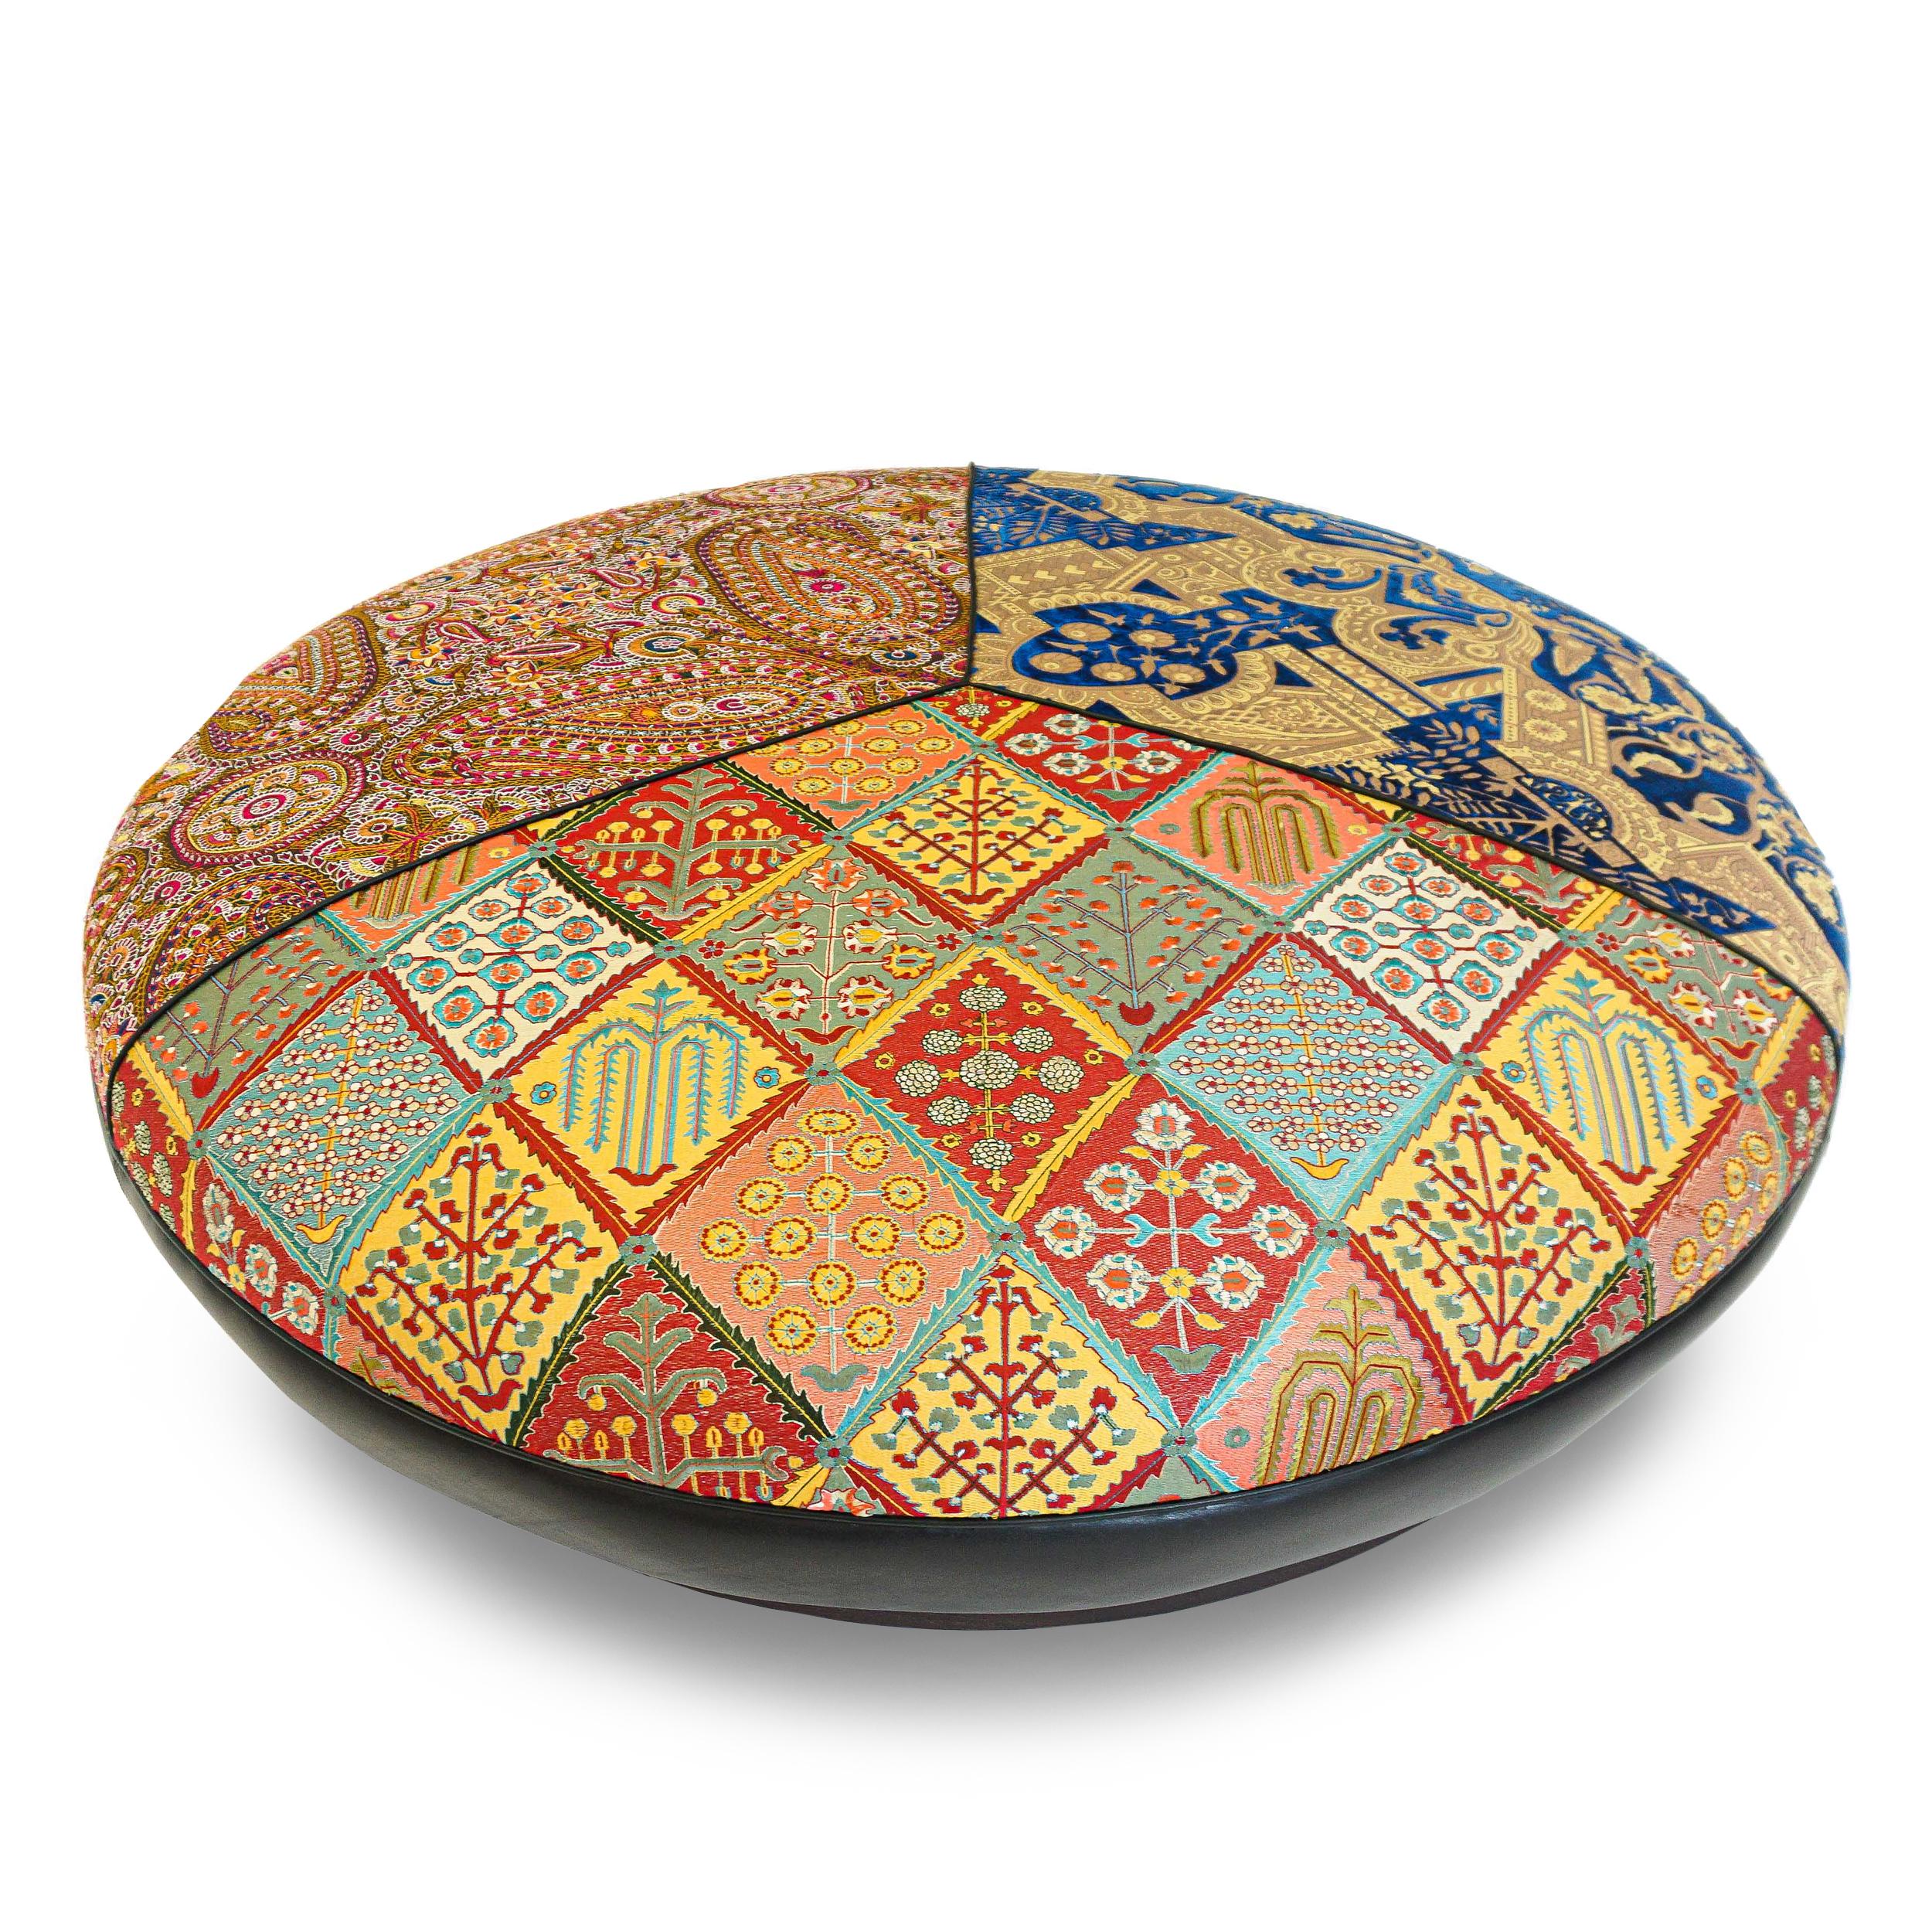 Cuir Grand pouf rond tapissé d'inspiration marocaine, personnalisable en vente